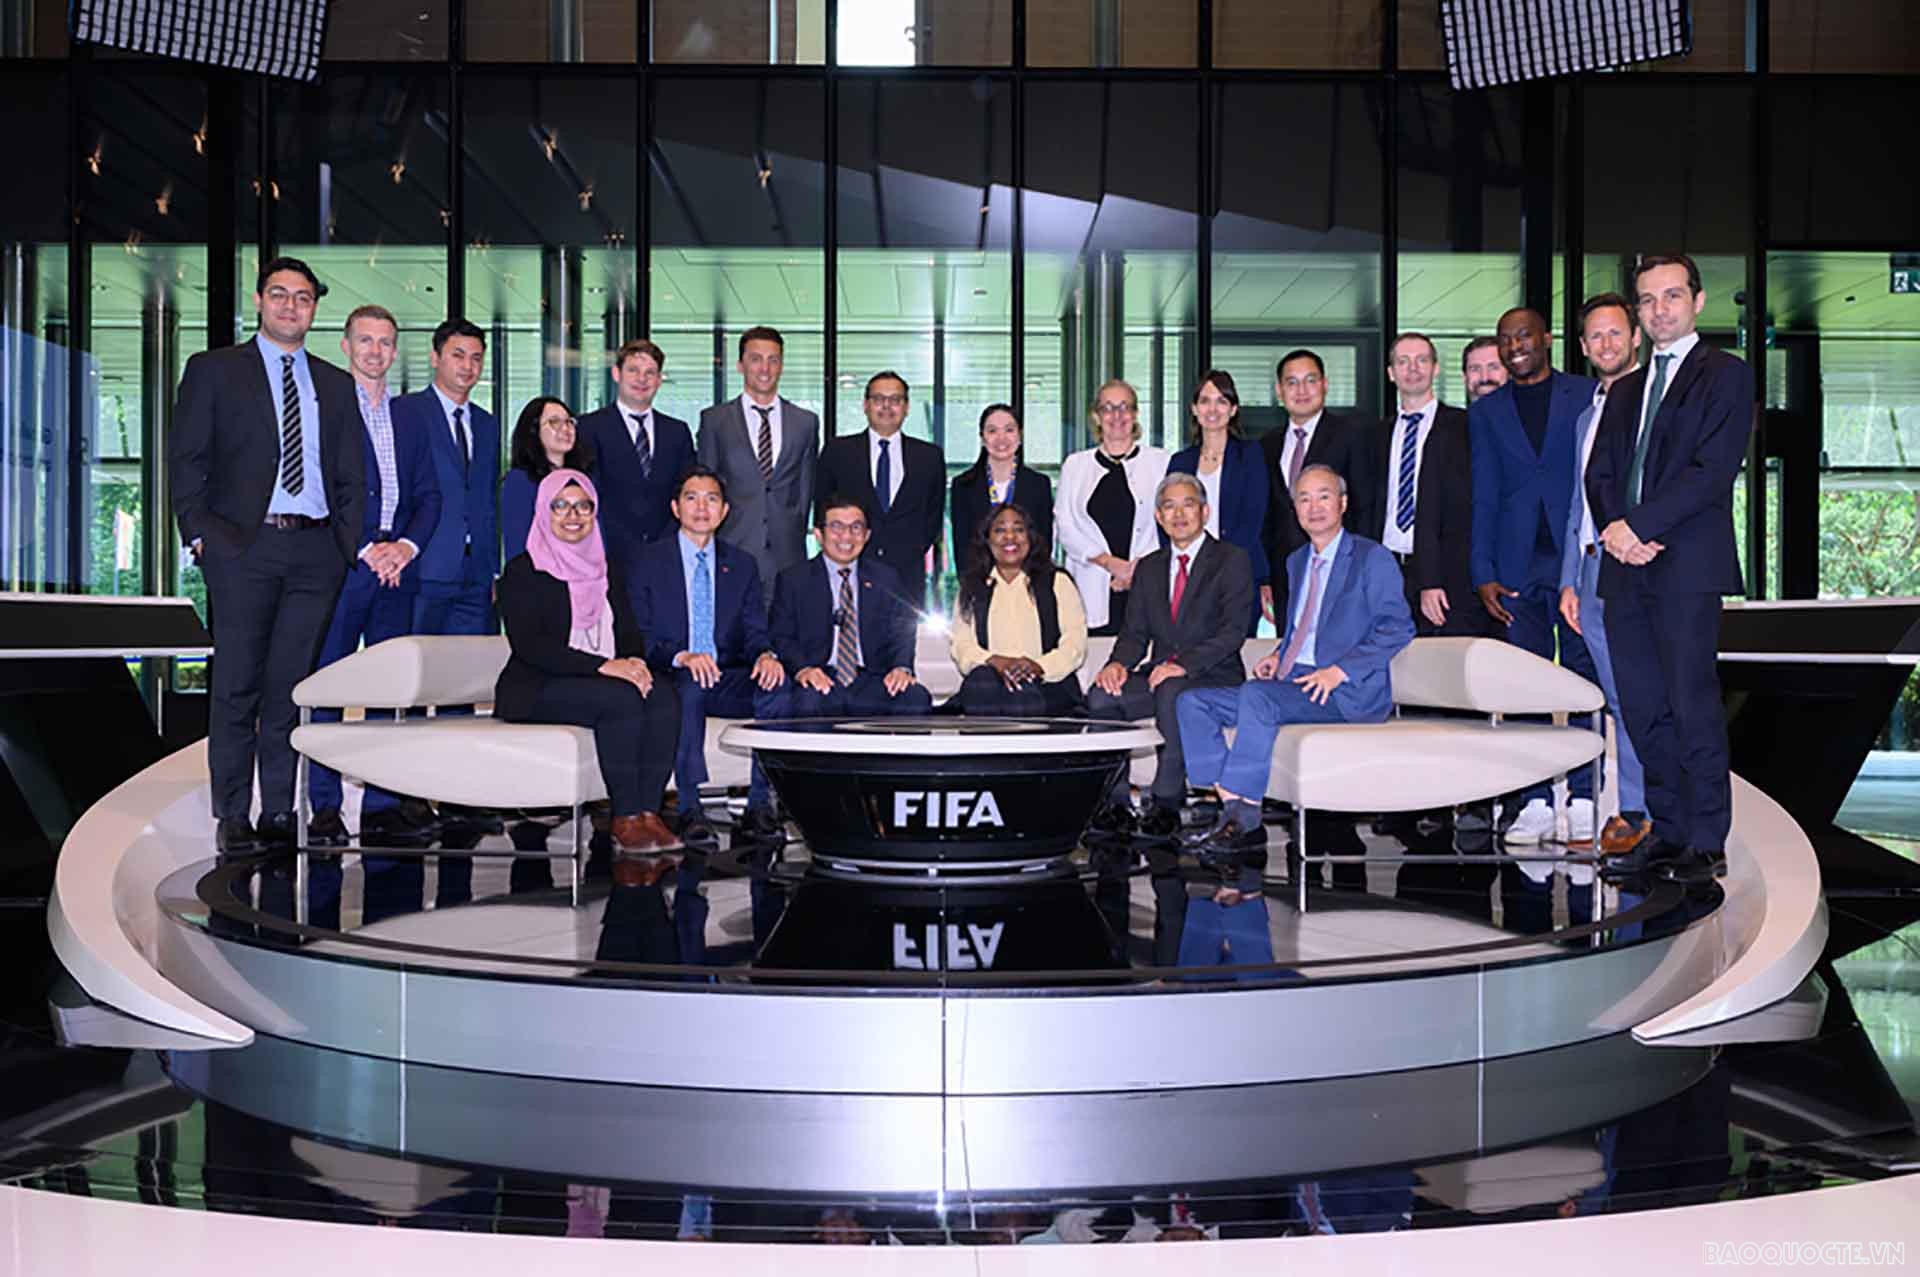 Ủy ban ASEAN tại Thụy Sỹ cùng Tổng Thư ký FIFA và đại diện các ban chức năng của FIFA